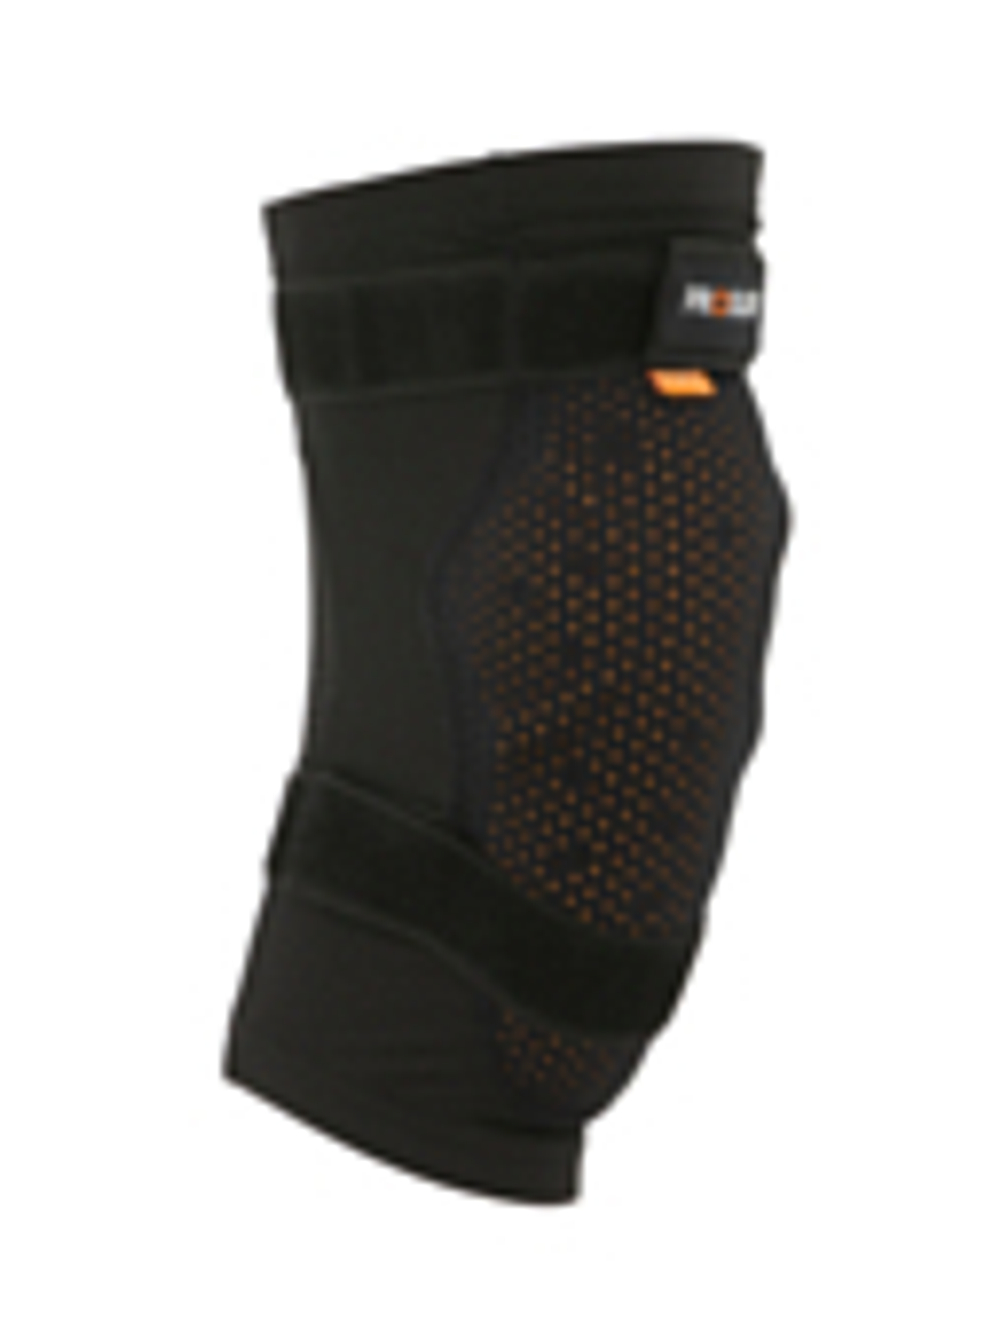 Защита колена ProSurf Knee Protectors D3O (US:M)